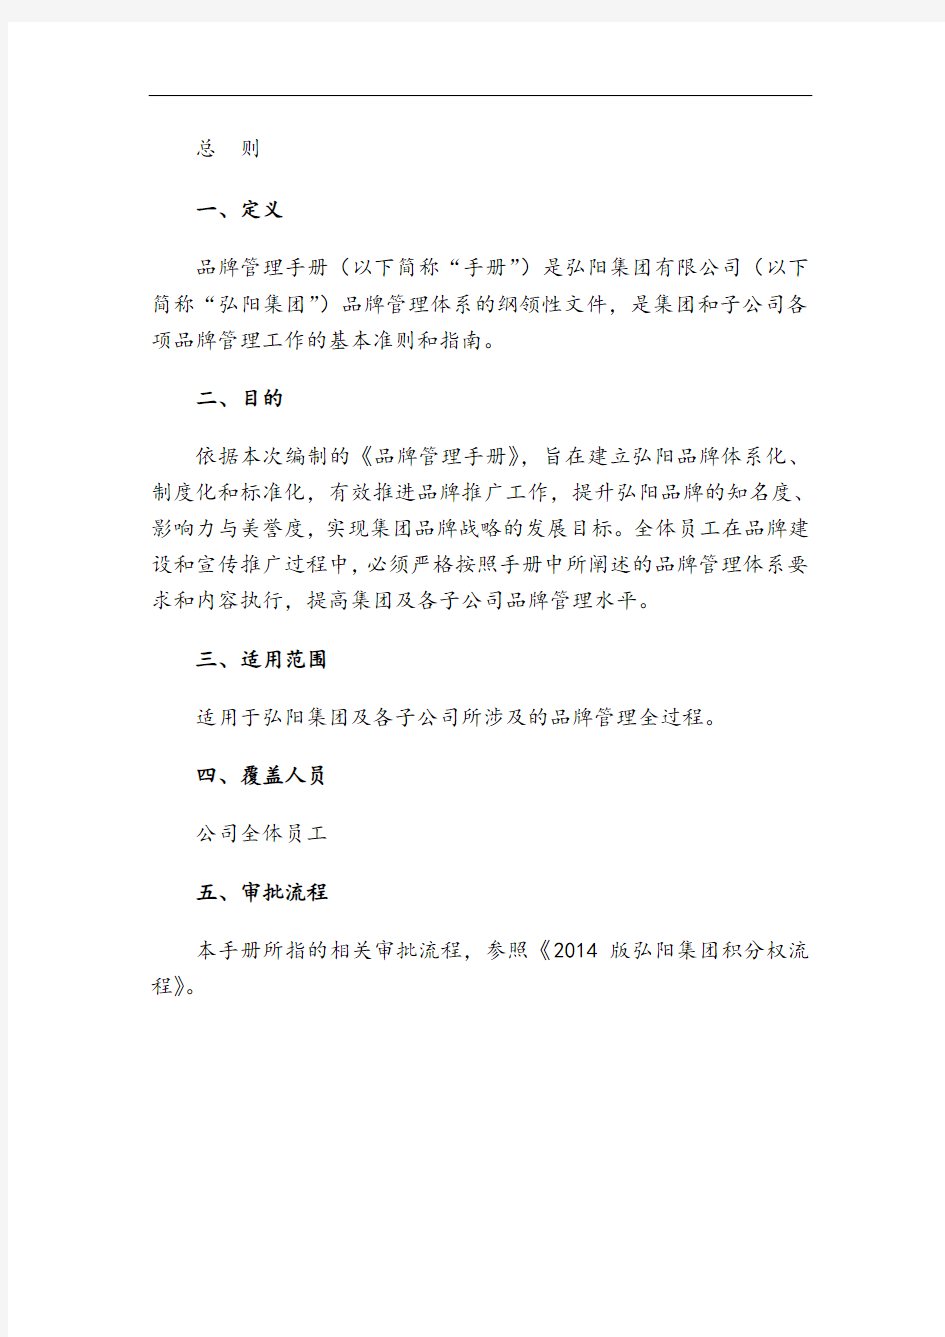 弘阳集团品牌管理手册(V1.0版)